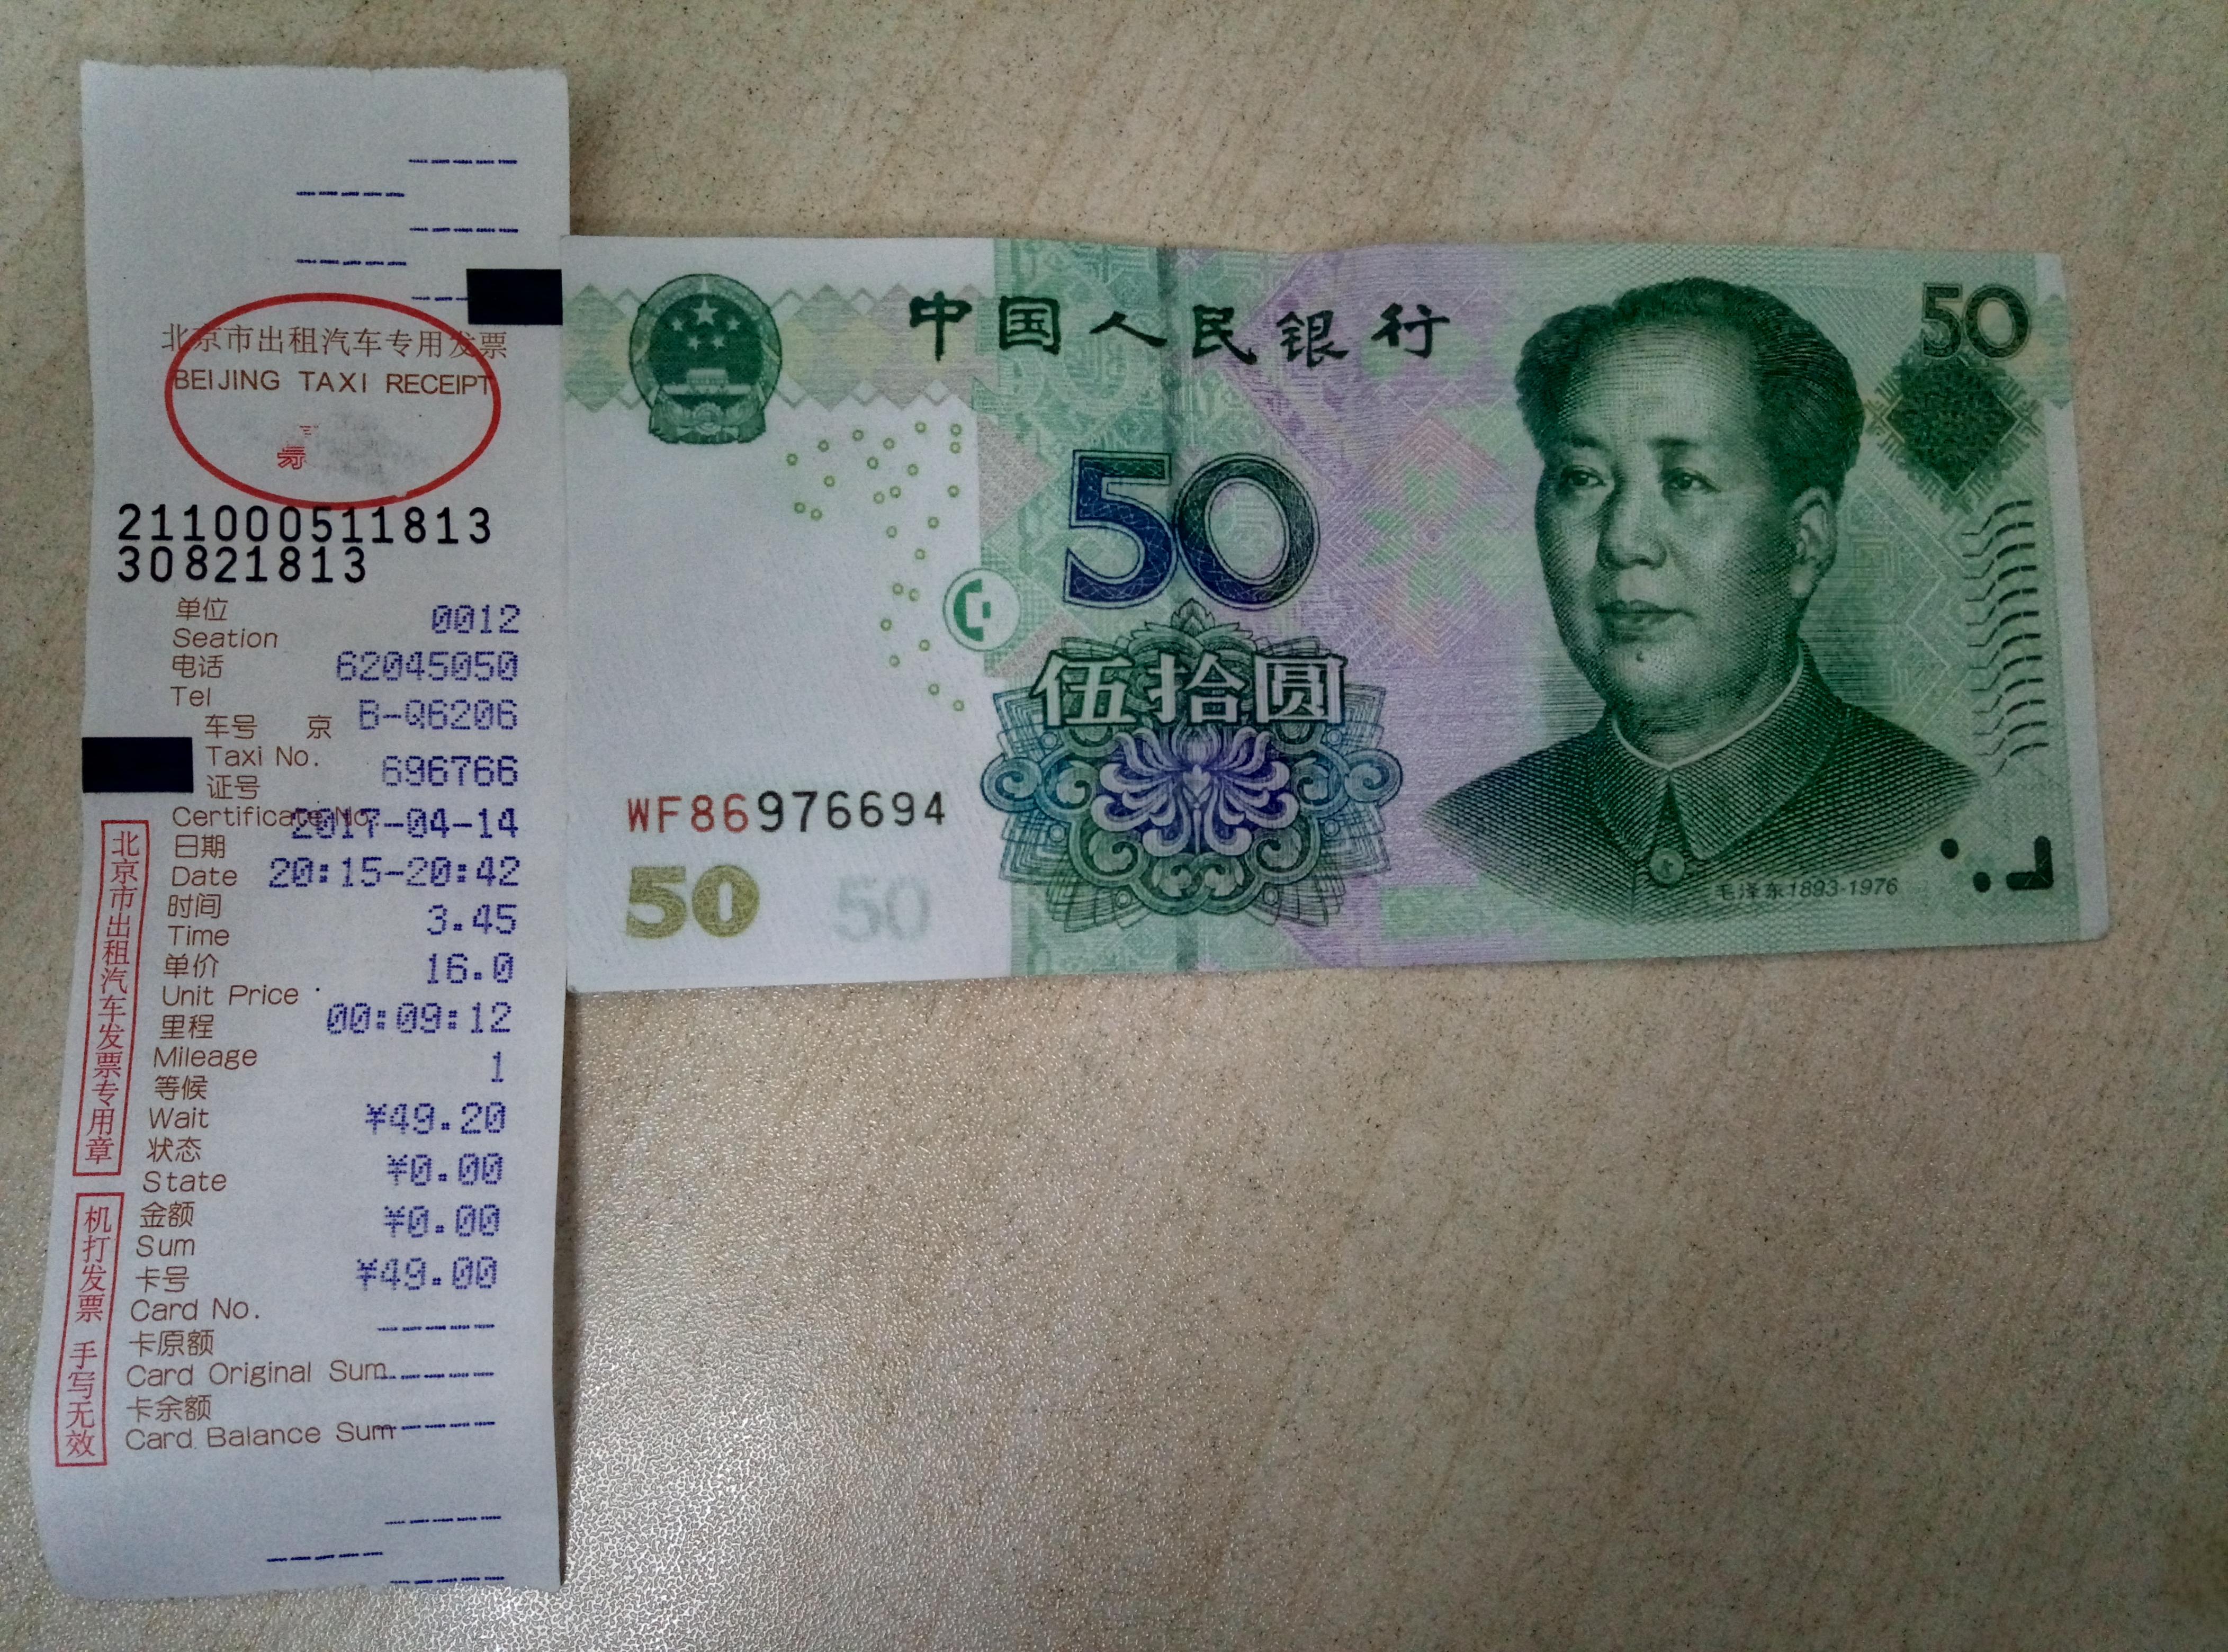 我该怎样投诉北京出租车司机找钱调包换假钱?